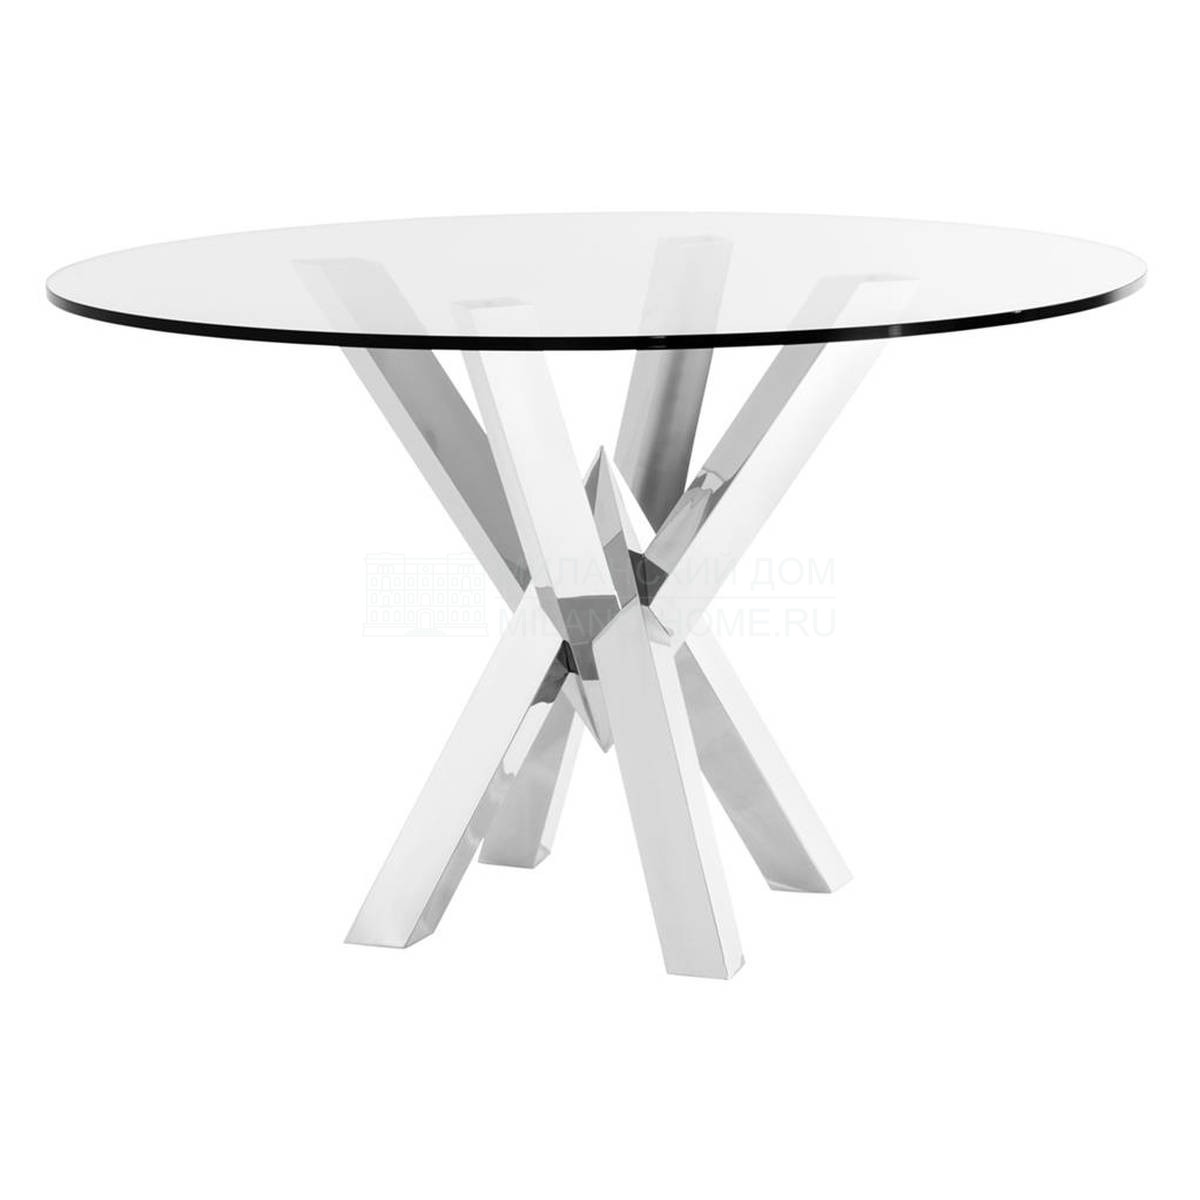 Круглый стол Triumph dining table из Голландии фабрики EICHHOLTZ